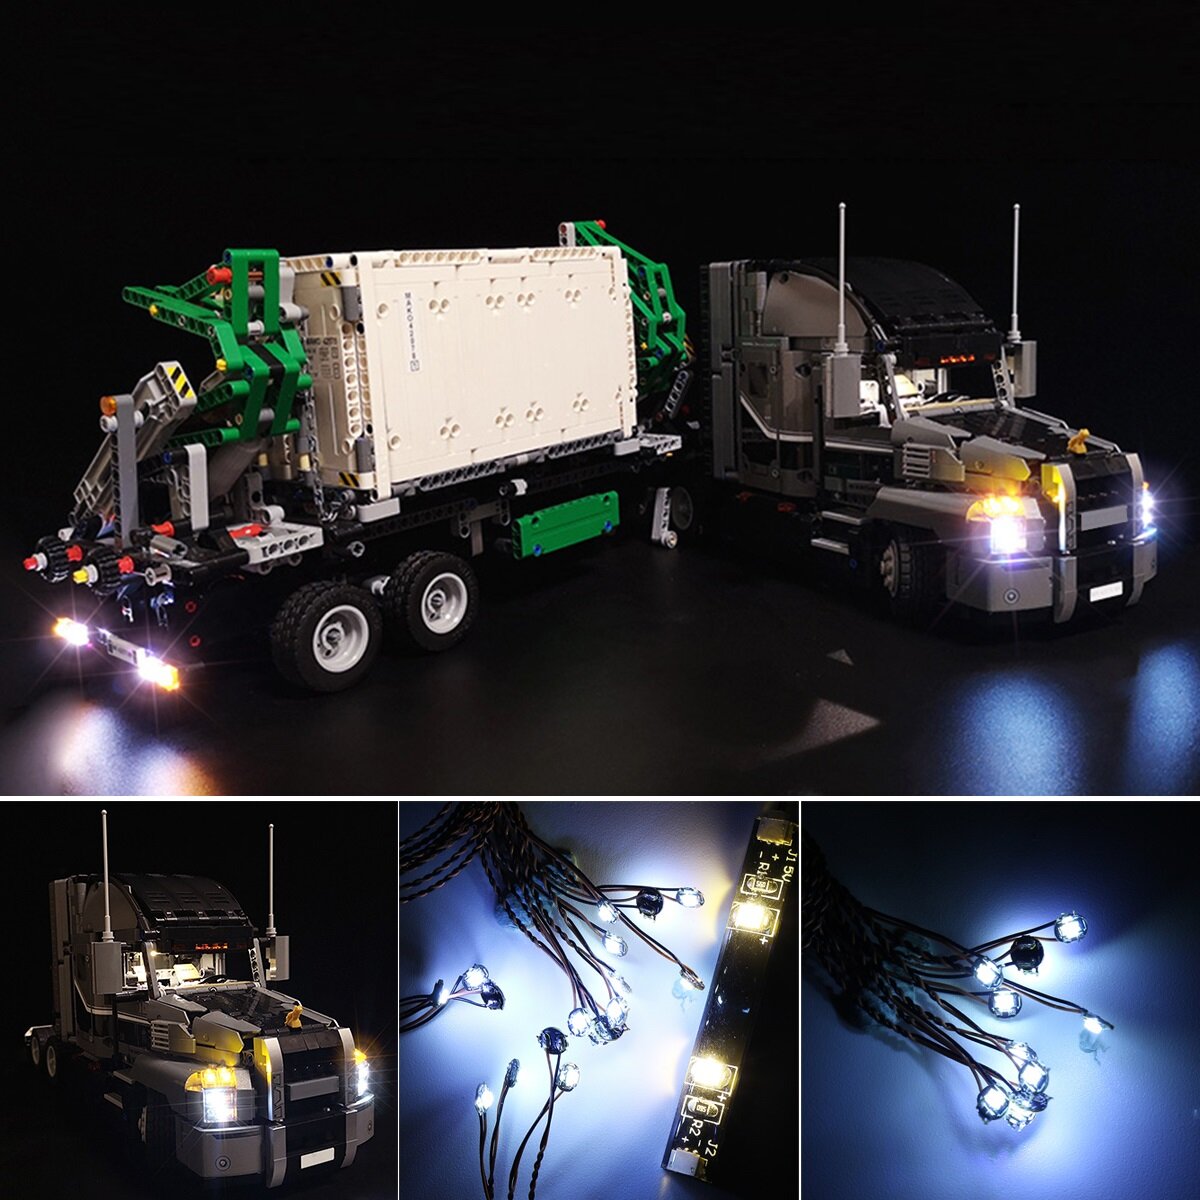 

DIY LED Light Kit ONLY For LEGO 42078 Technic Series Truck Lighting